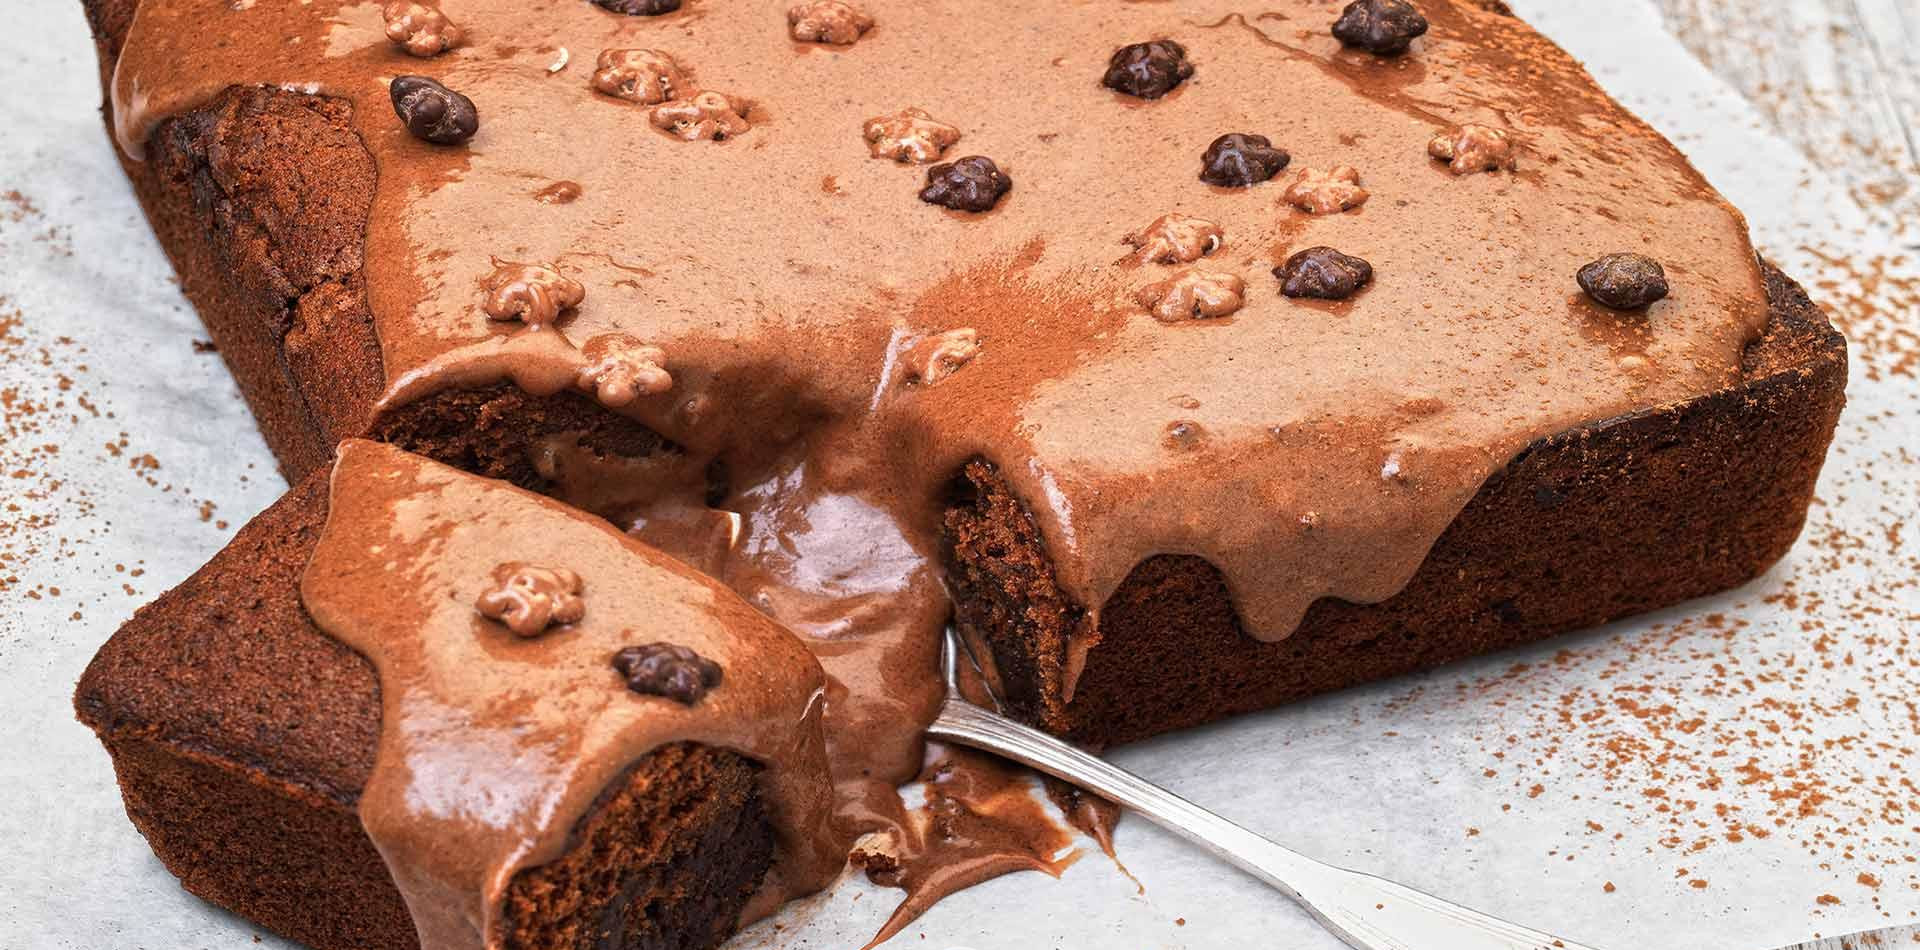 Σοκολατόπιτα από την Αργυρώ Μπαρμπαρίγου – Θα τρελαθείς με τη γεύση της